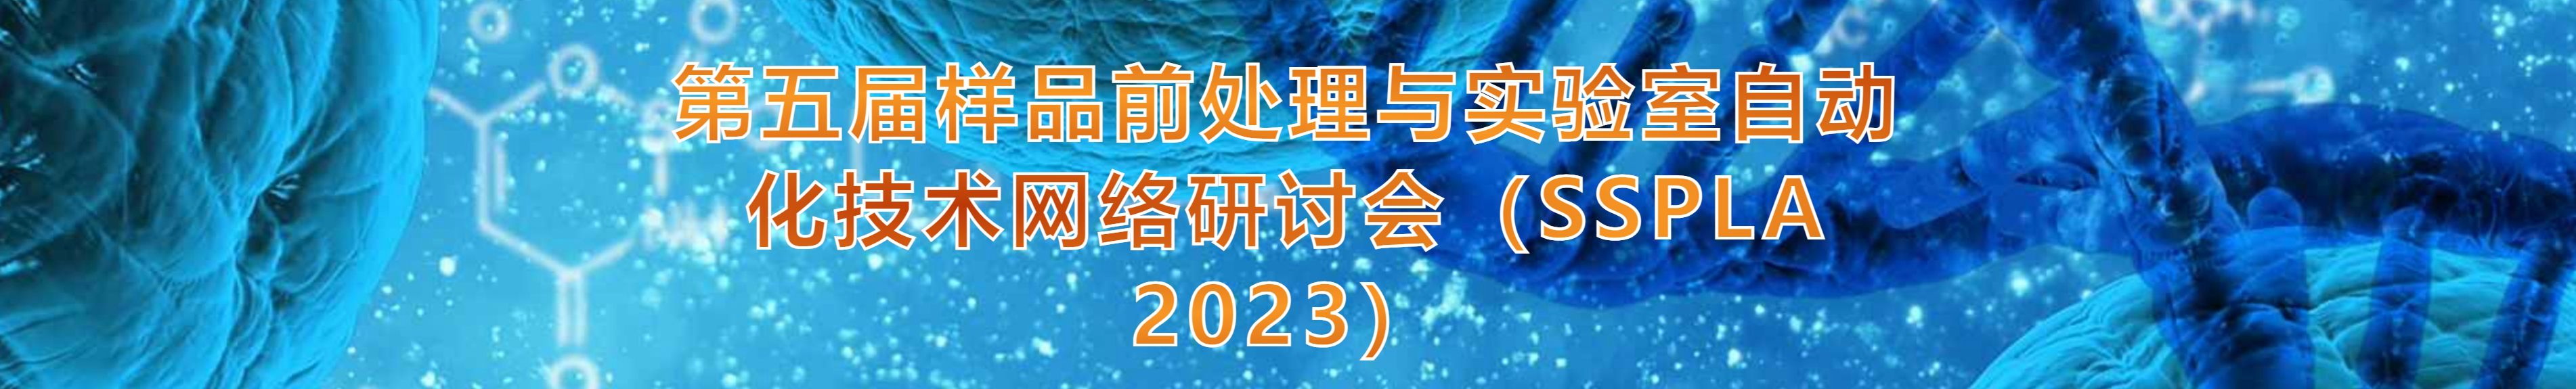 第五届样品前处理与实验室自动化技术网络研讨会(SSPLA 2023)